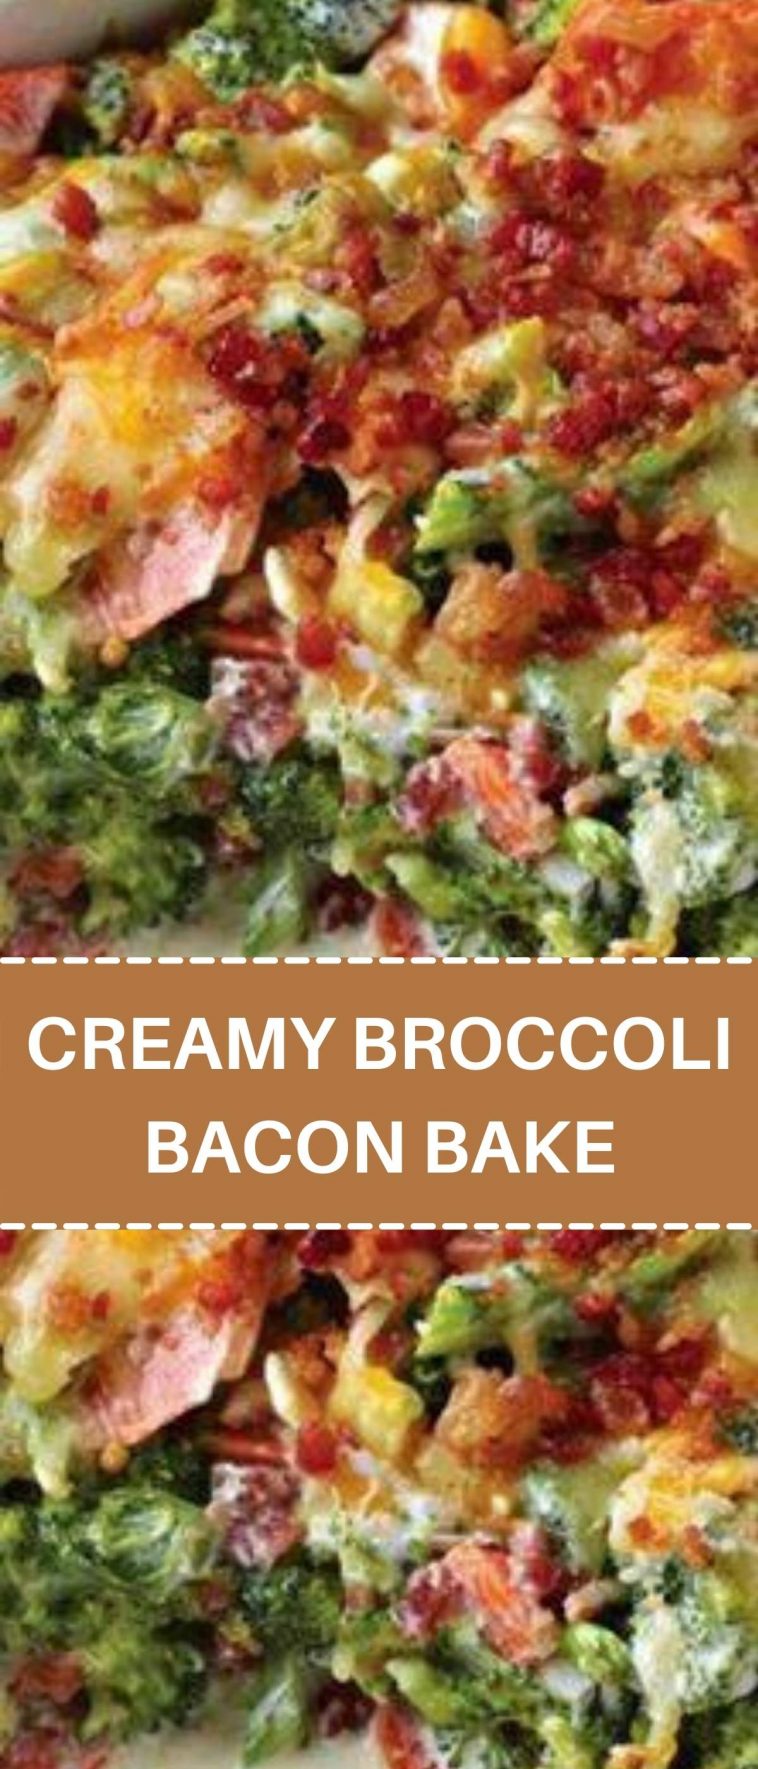 CREAMY BROCCOLI BACON BAKE